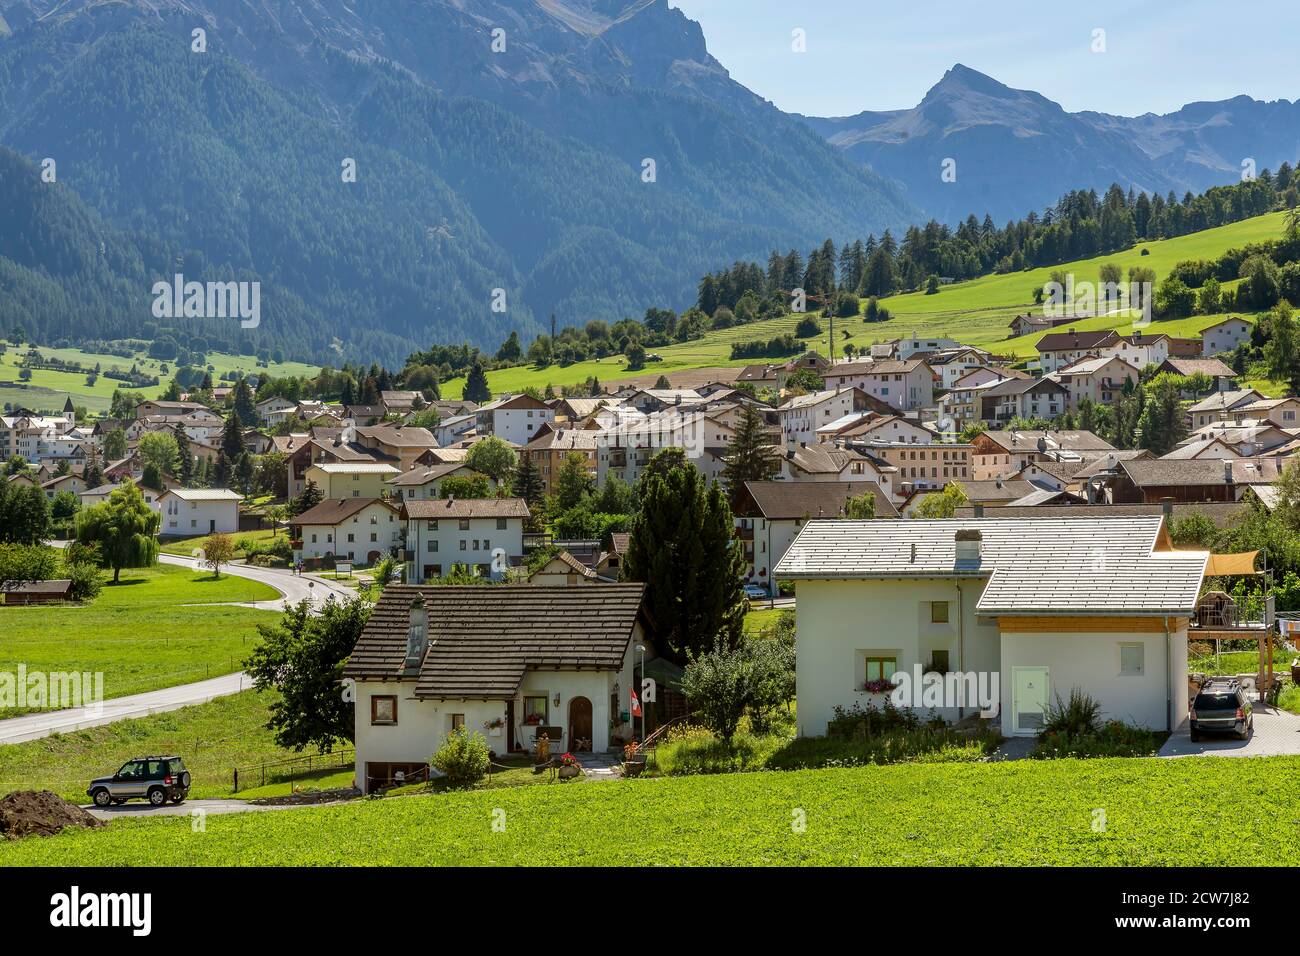 Un aperçu de Müstair, dans le Val Monastero, dans le canton des Grisons, en Suisse, par une journée ensoleillée Banque D'Images